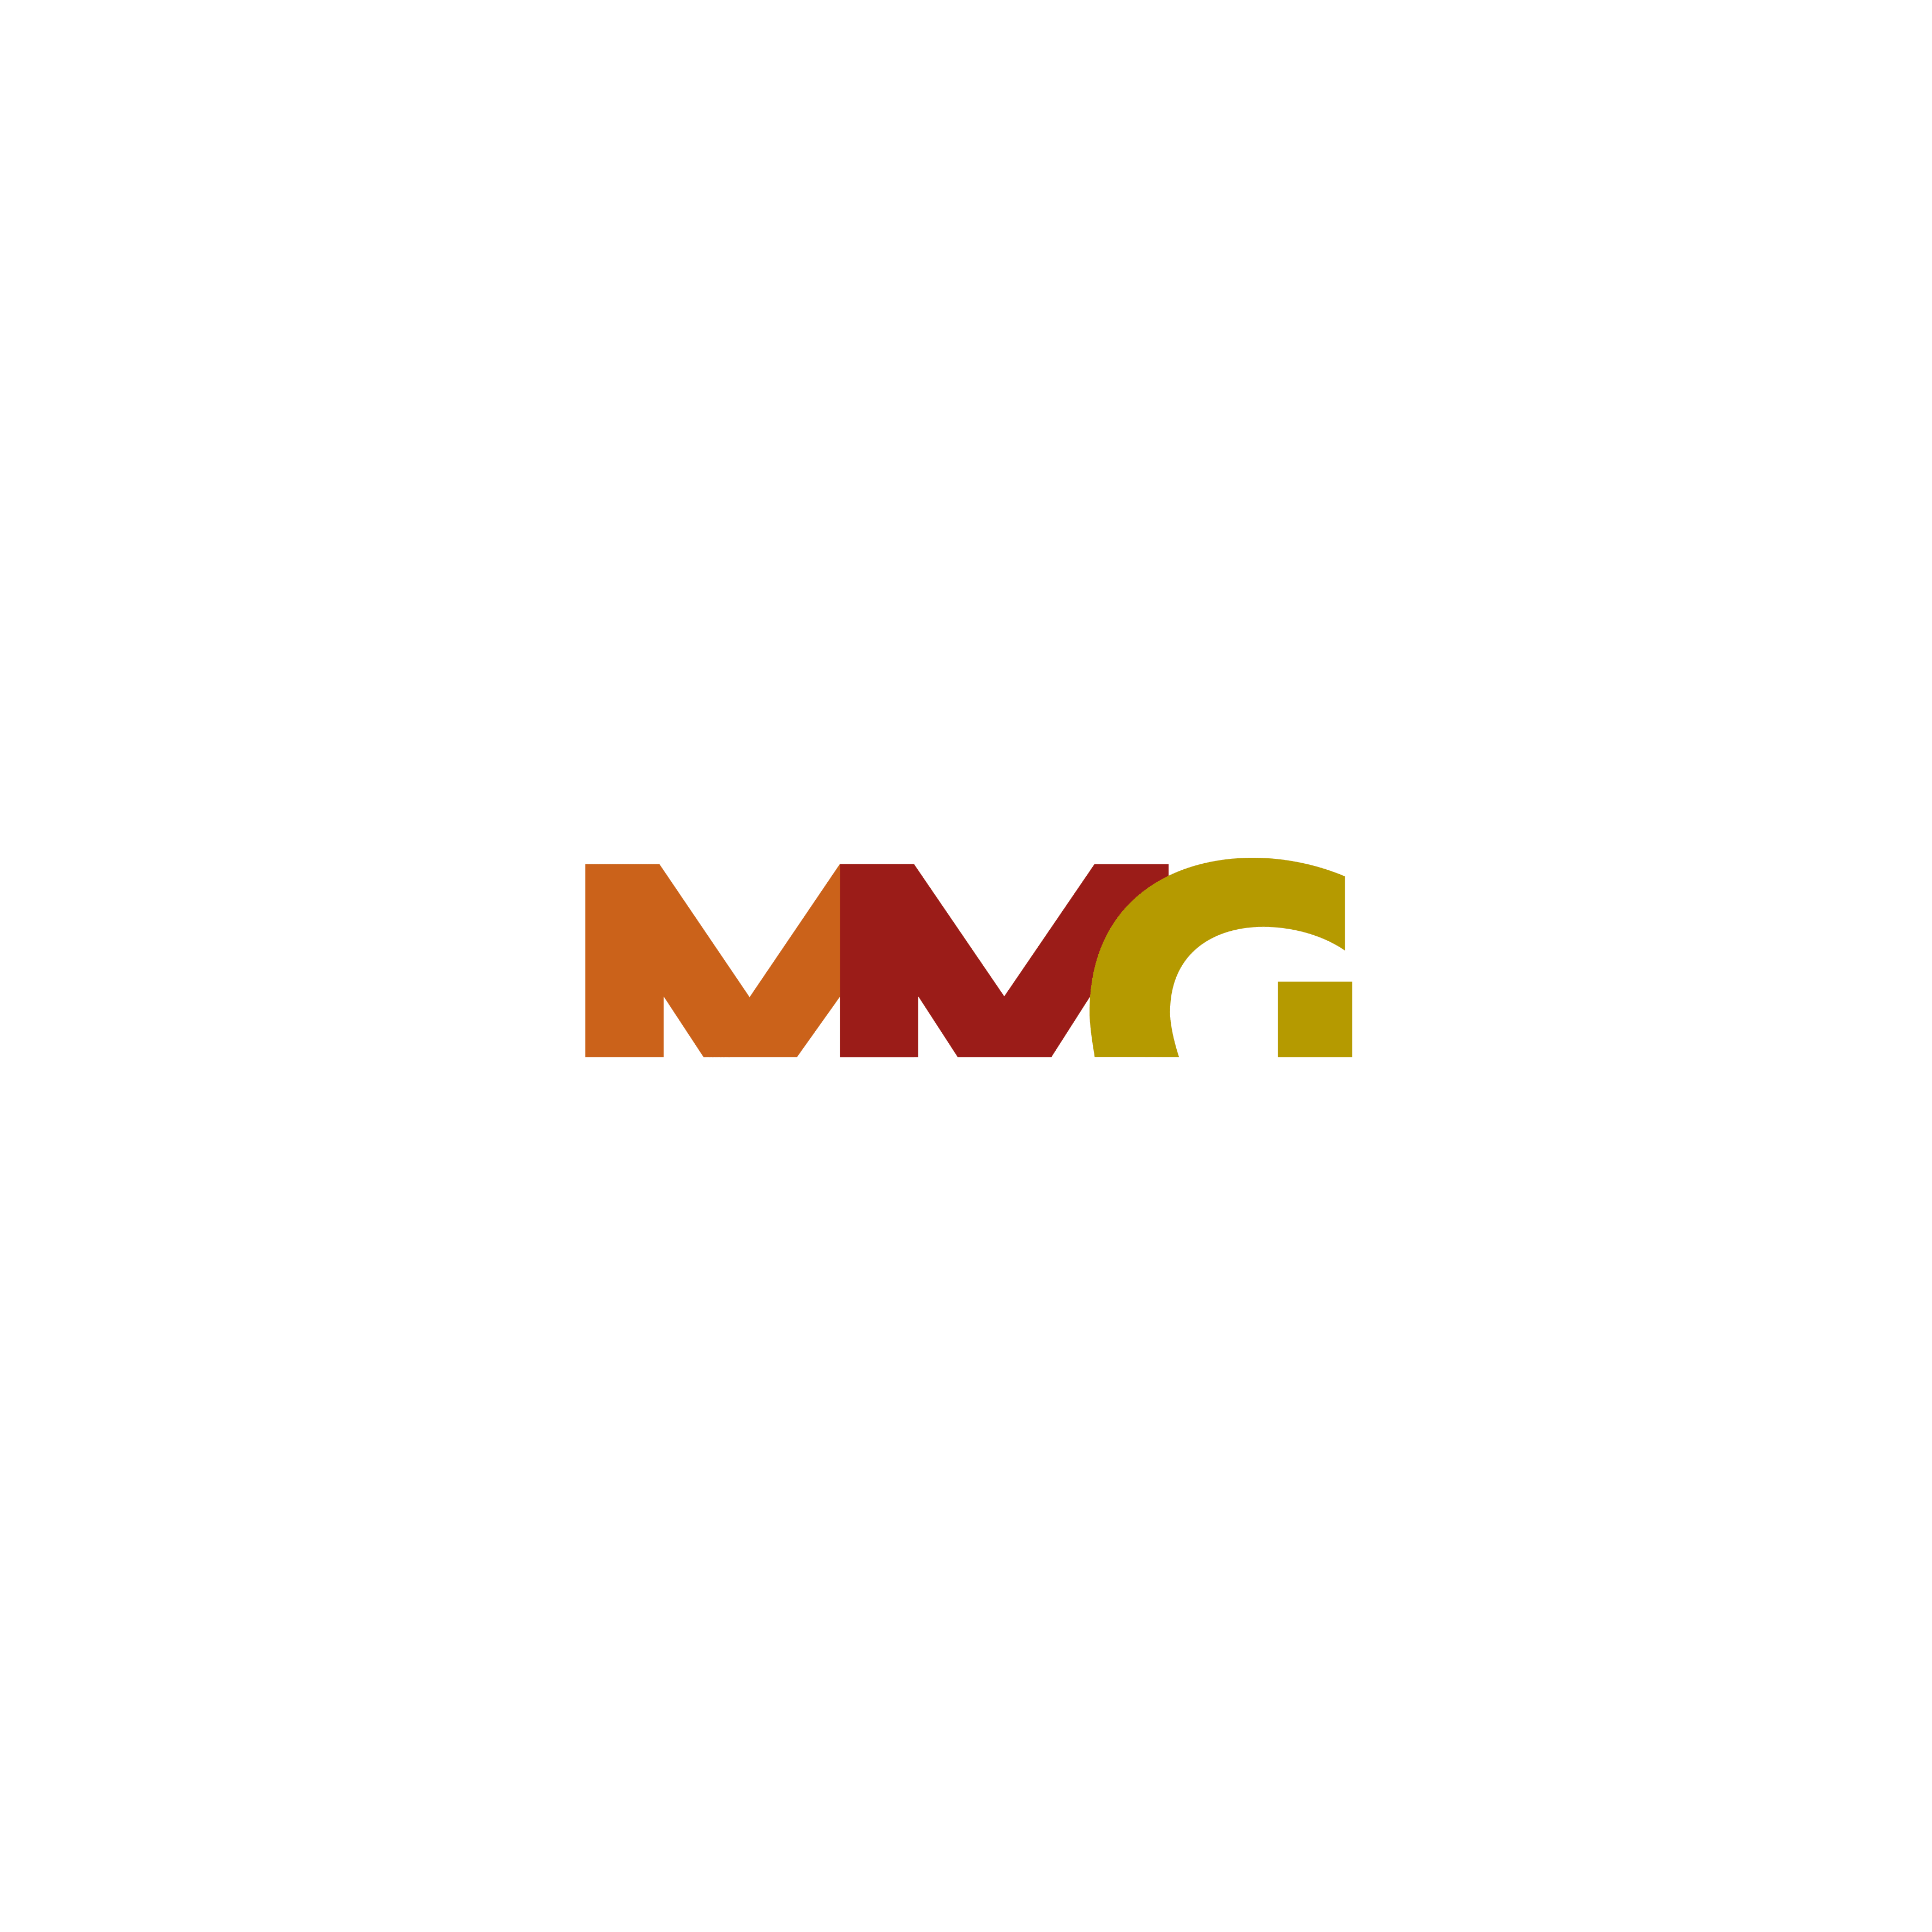 Studio Legale MMG - Mollica Mazzeo Guarnaccia